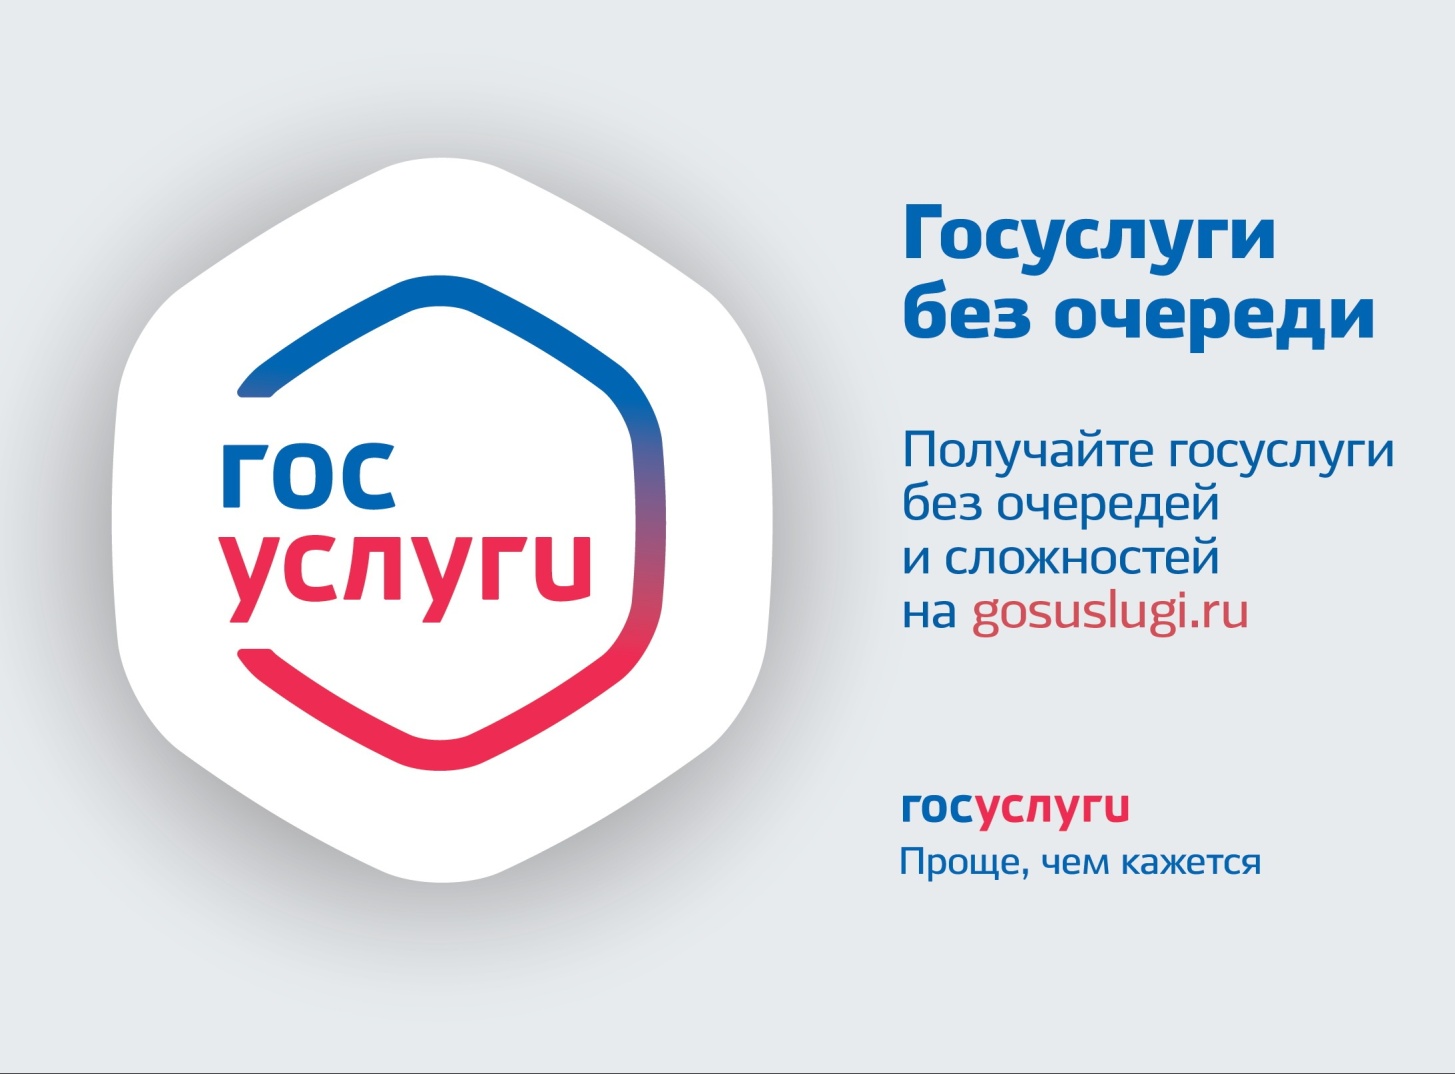 Подать заявление о предоставлении  массовых социально-значимых услуг можно  на Портале государственных услуг Российской Федерации.